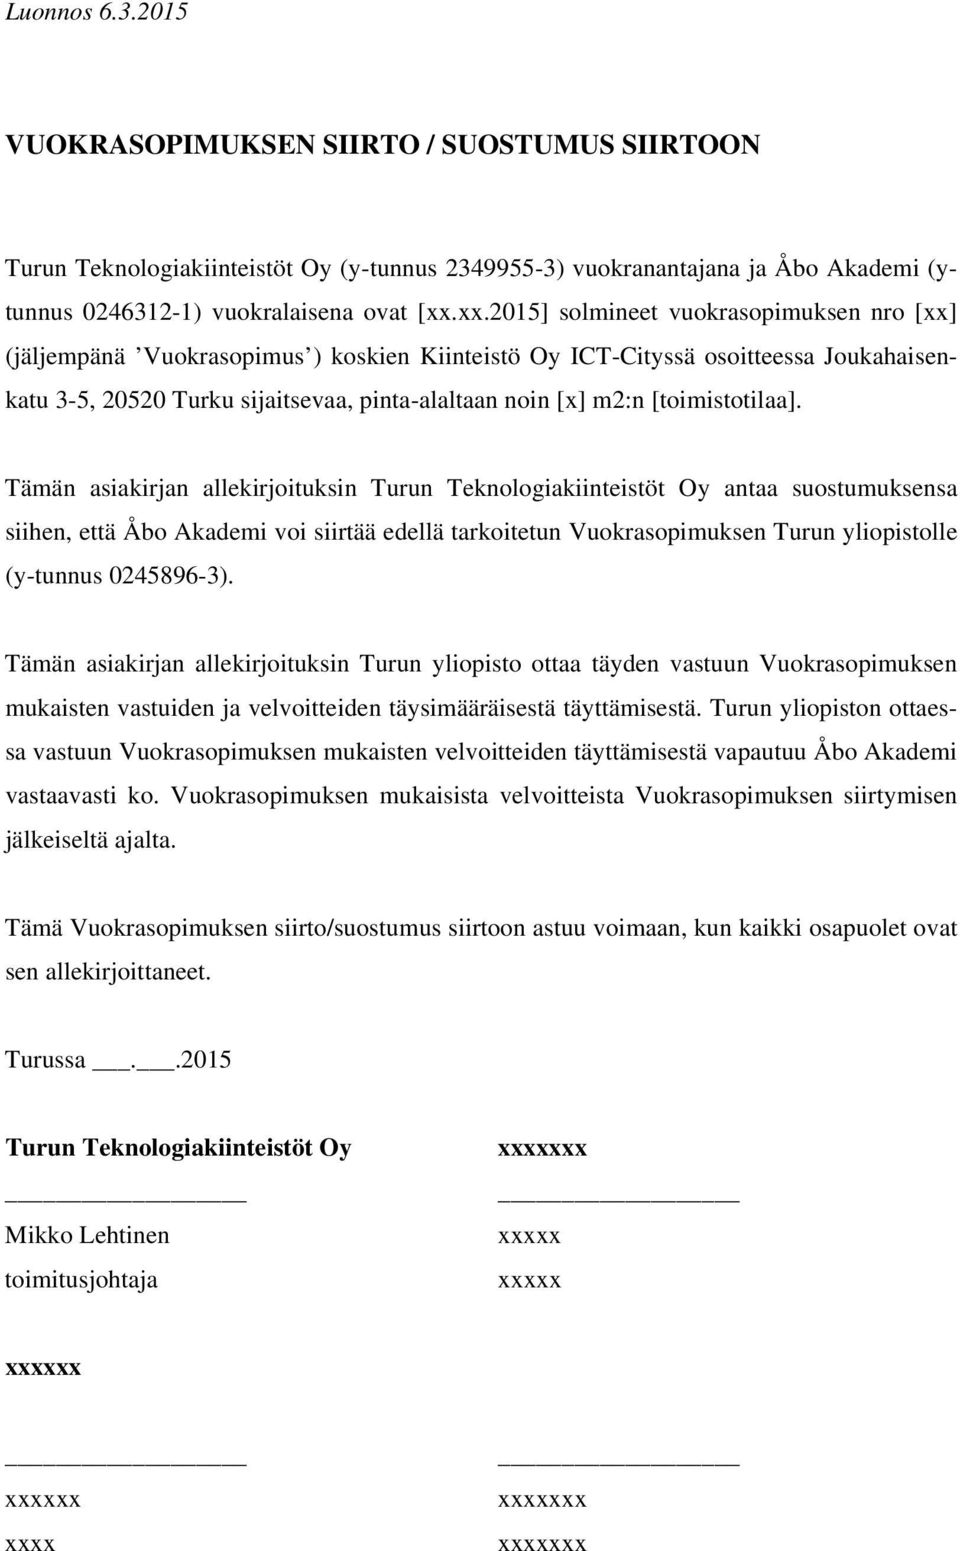 tarkoitetun Vuokrasopimuksen Turun yliopistolle (y-tunnus 0245896-3).